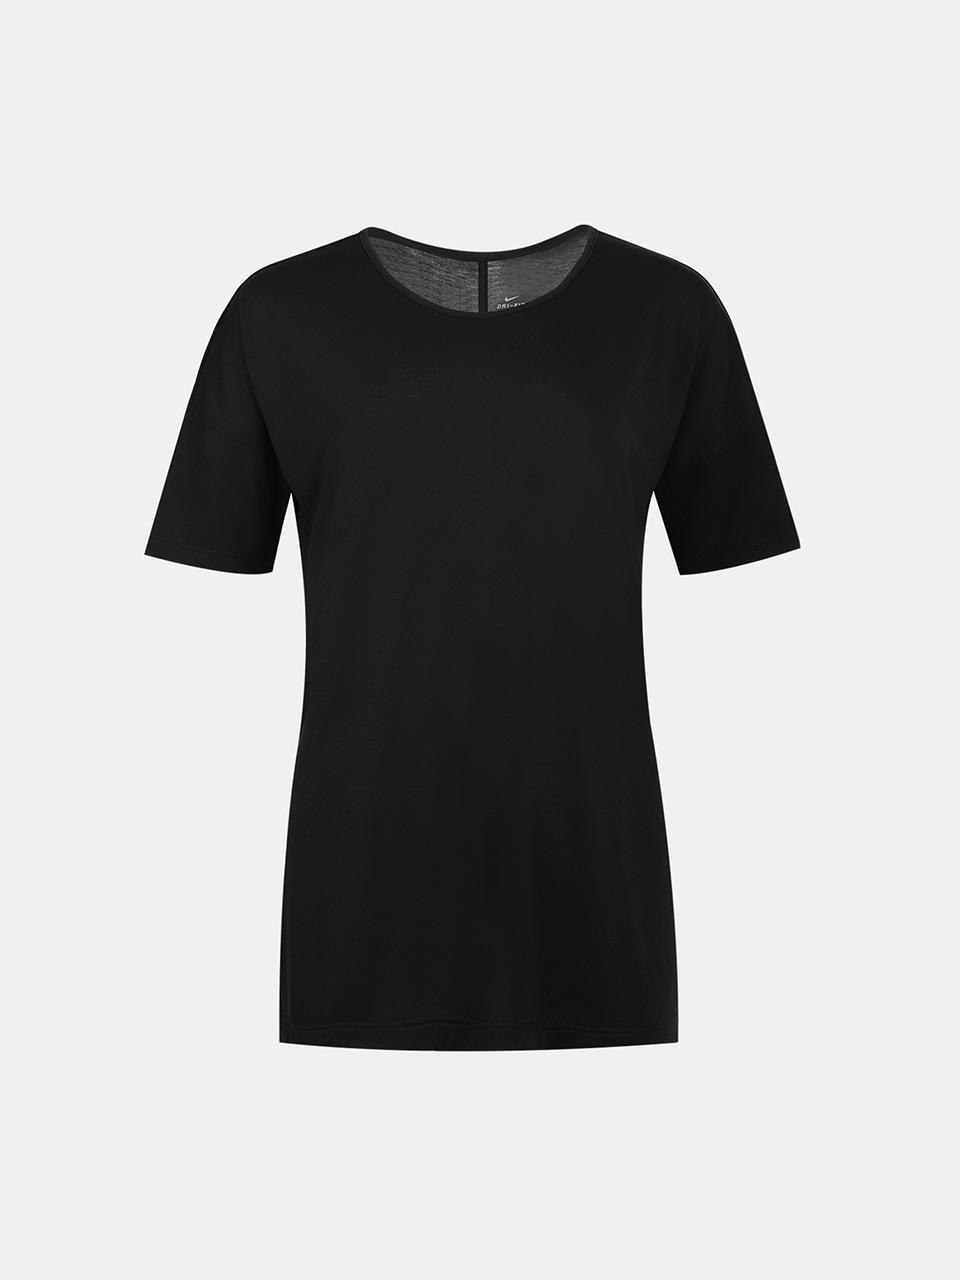 나이키 여성용 드라이핏 요가 레이어 트레이닝 탑 반소매티셔츠 블랙 CJ9326-010 - 럭셔리갤러리